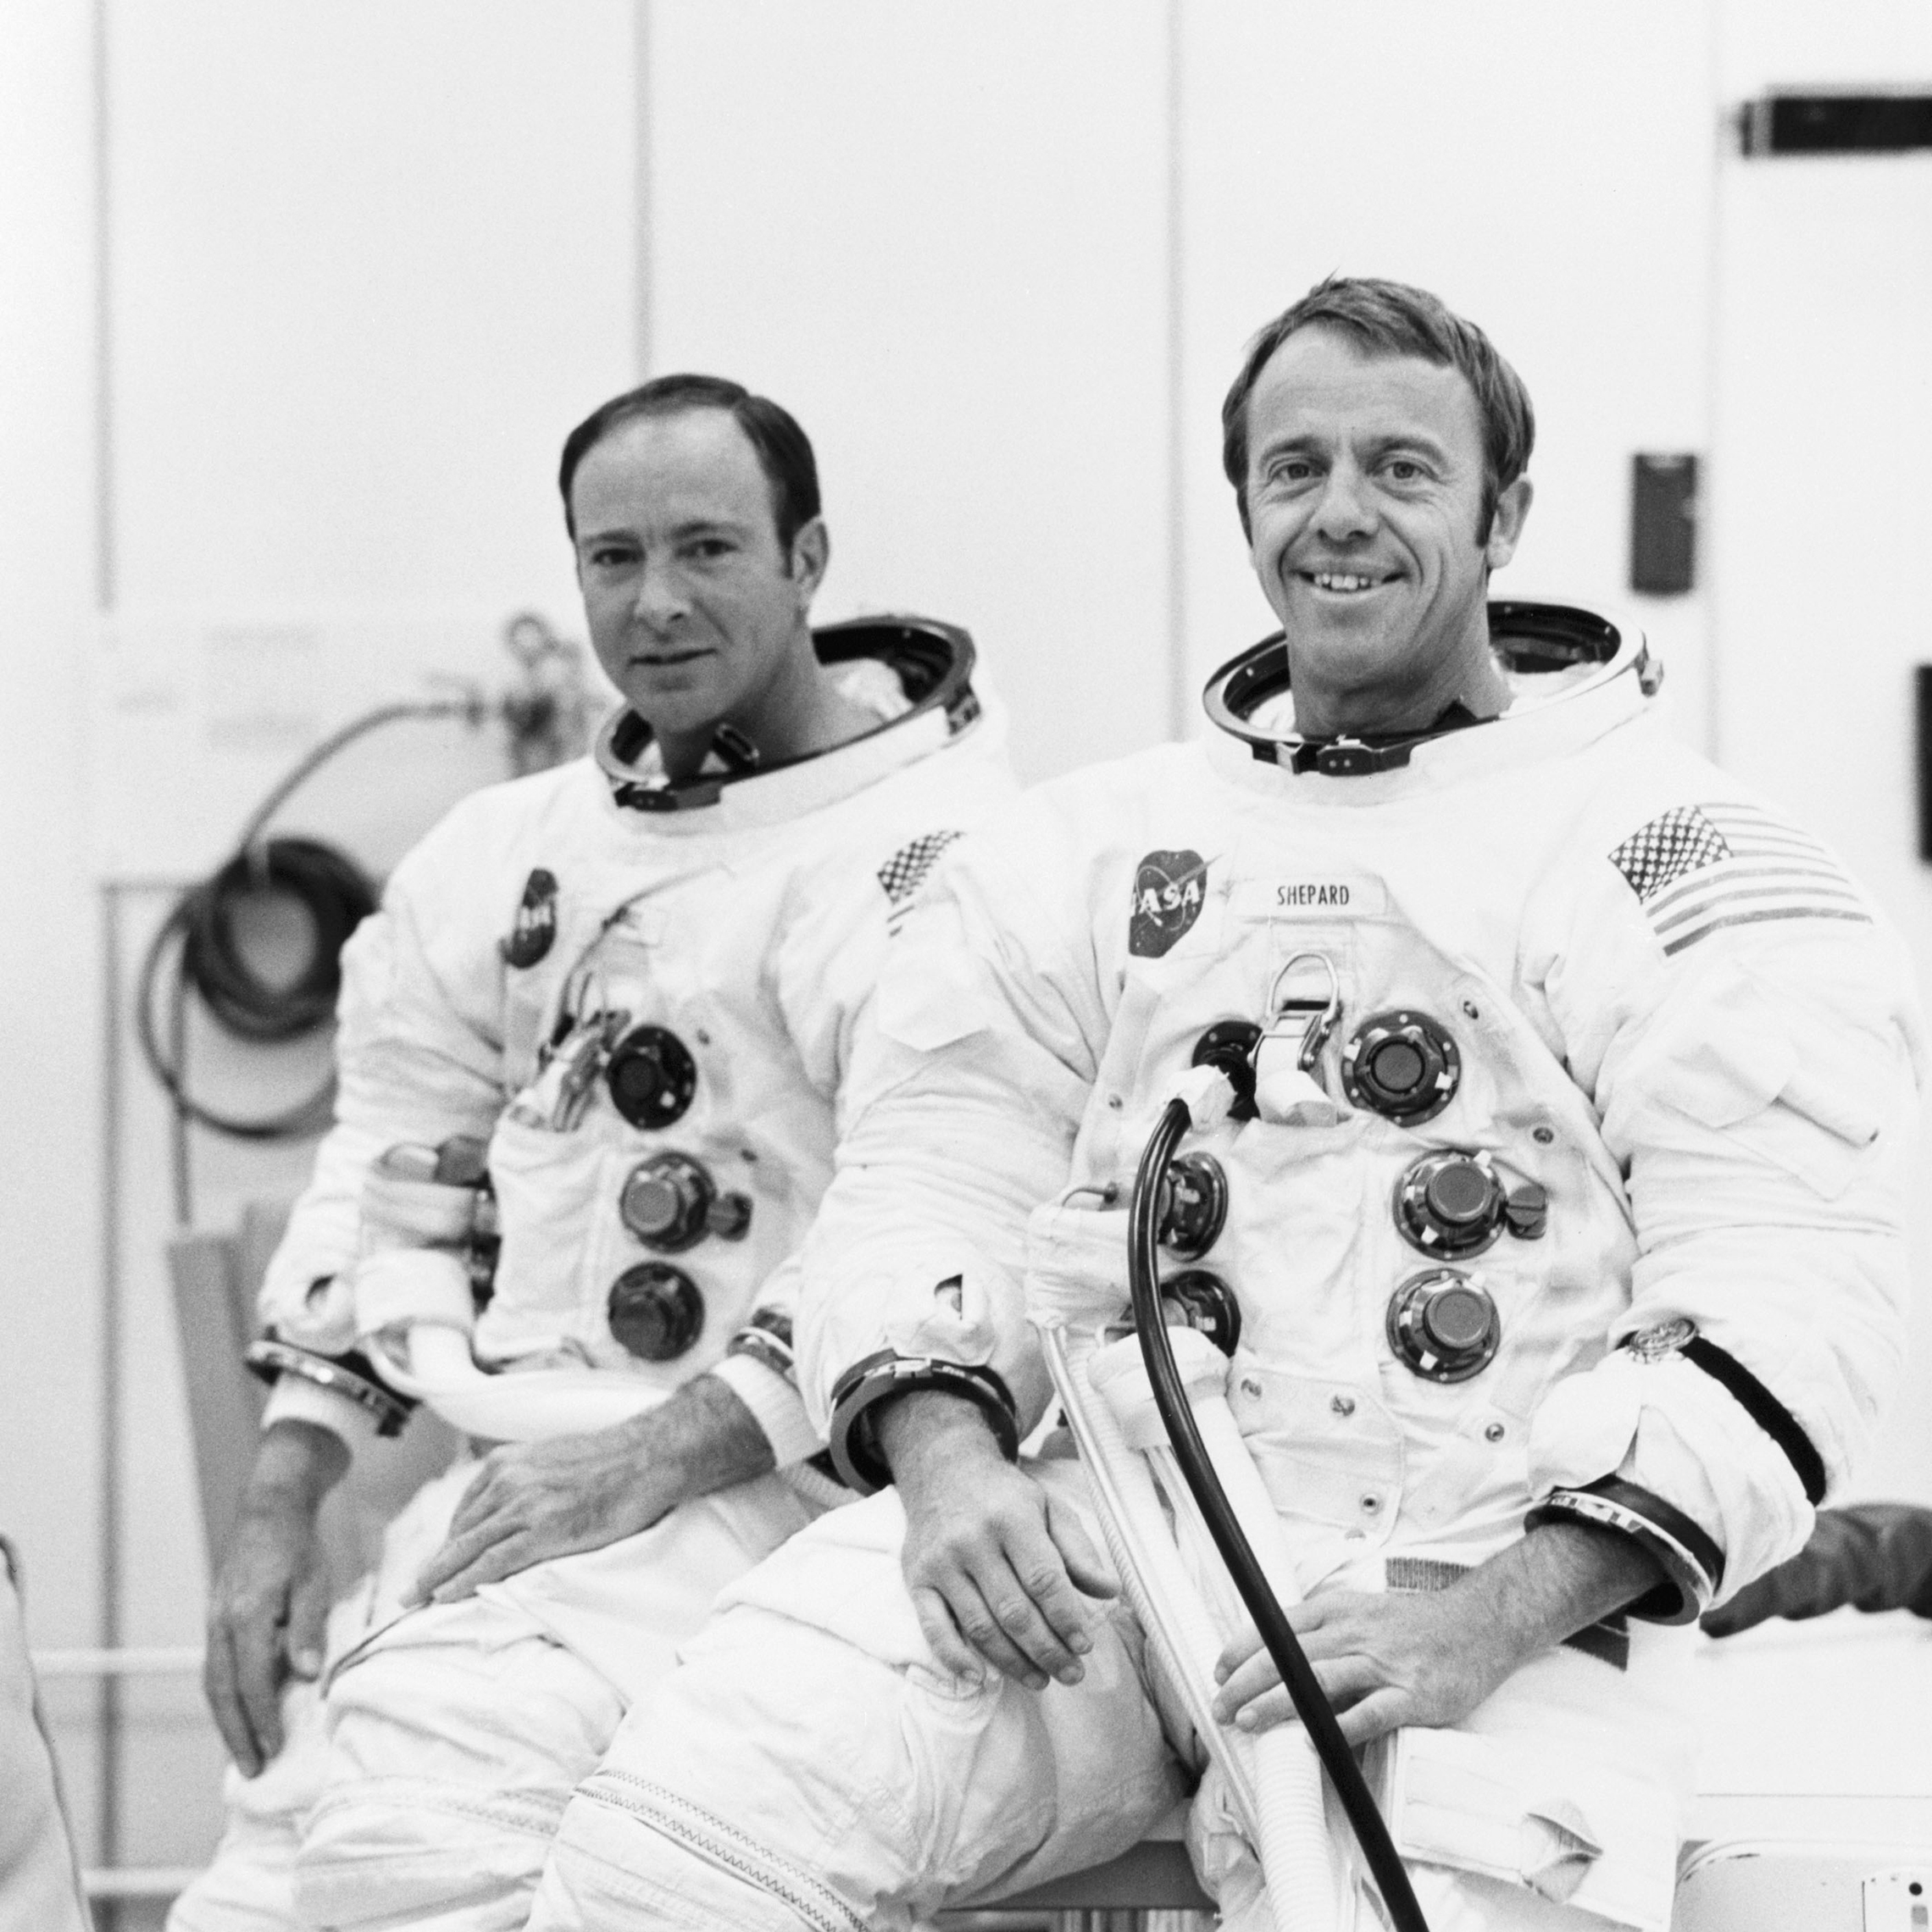 18. September 1970: Die Astronauten Alan B. Shepard Jr. (rechts), Kommandant, und Edgar D. Mitchell, Pilot der Mondlandefähre, sind für einen bemannten Höhenlauf in der Apollo 14 Mondlandefähre (LM) geeignet. Der bemannte Lauf in einer Vakuumkammer des Betriebsgebäudes der bemannten Raumsonde wurde durchgeführt, um die Kommunikations-, Leit- und Navigationssysteme des LM zu validieren. 18. September 1970: Die Astronauten Alan B. Shepard Jr., Kommandant, und Edgar D. Mitchell, Pilot der Mondlandefähre, sind für einen bemannten Höhenlauf in der Apollo 14 Mondlandefähre (LM) geeignet. Der bemannte Lauf in einer Vakuumkammer des Betriebsgebäudes der bemannten Raumsonde wurde durchgeführt, um die LM-Leit- und Navigationssysteme zu validieren.'s communications and guidance and navigation systems. (NASA)